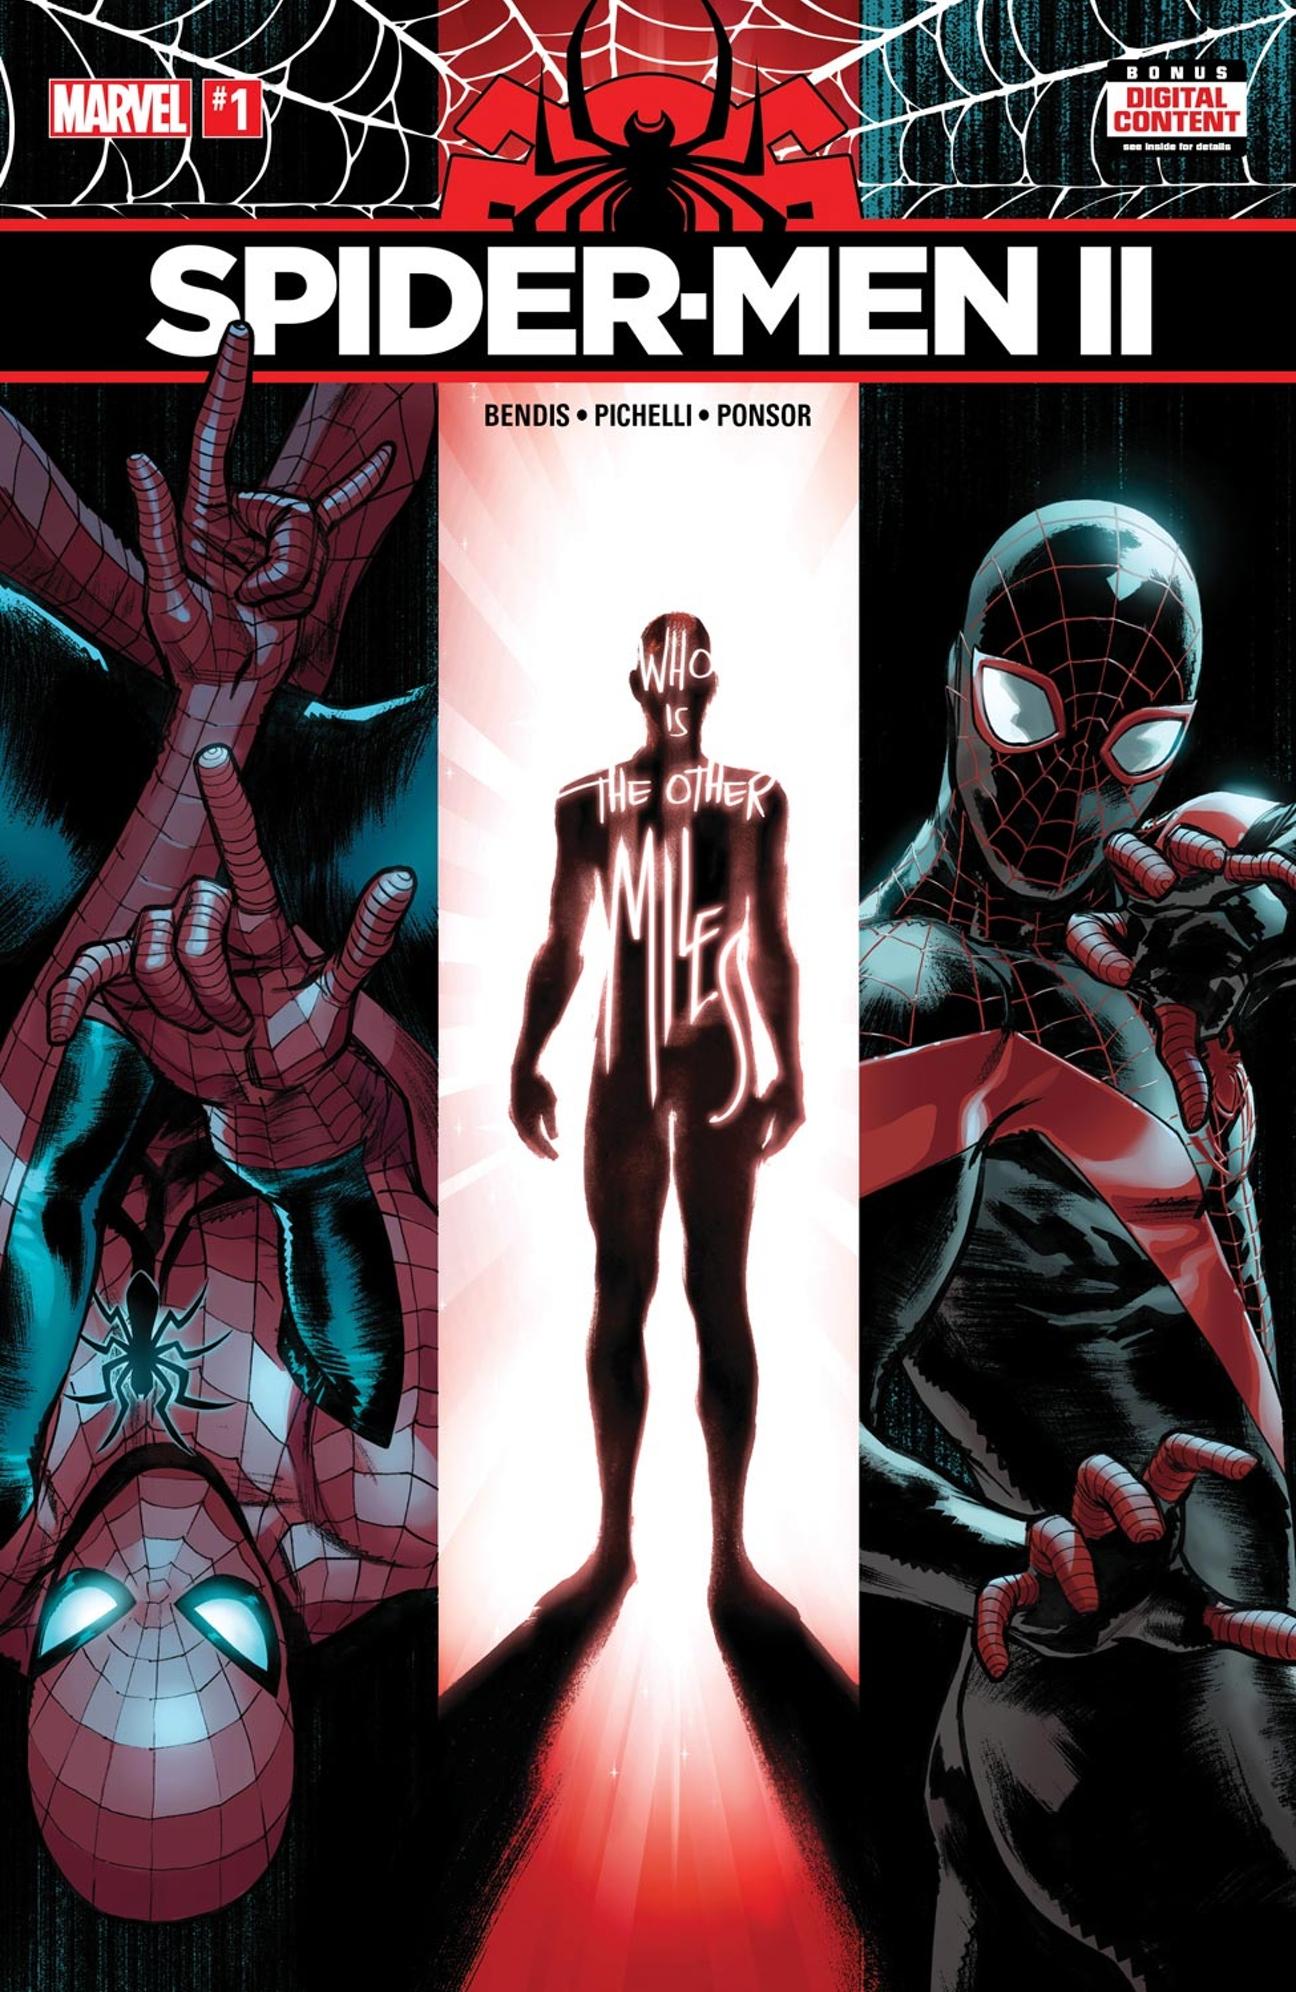 Spider-Men II Vol. 1 #1